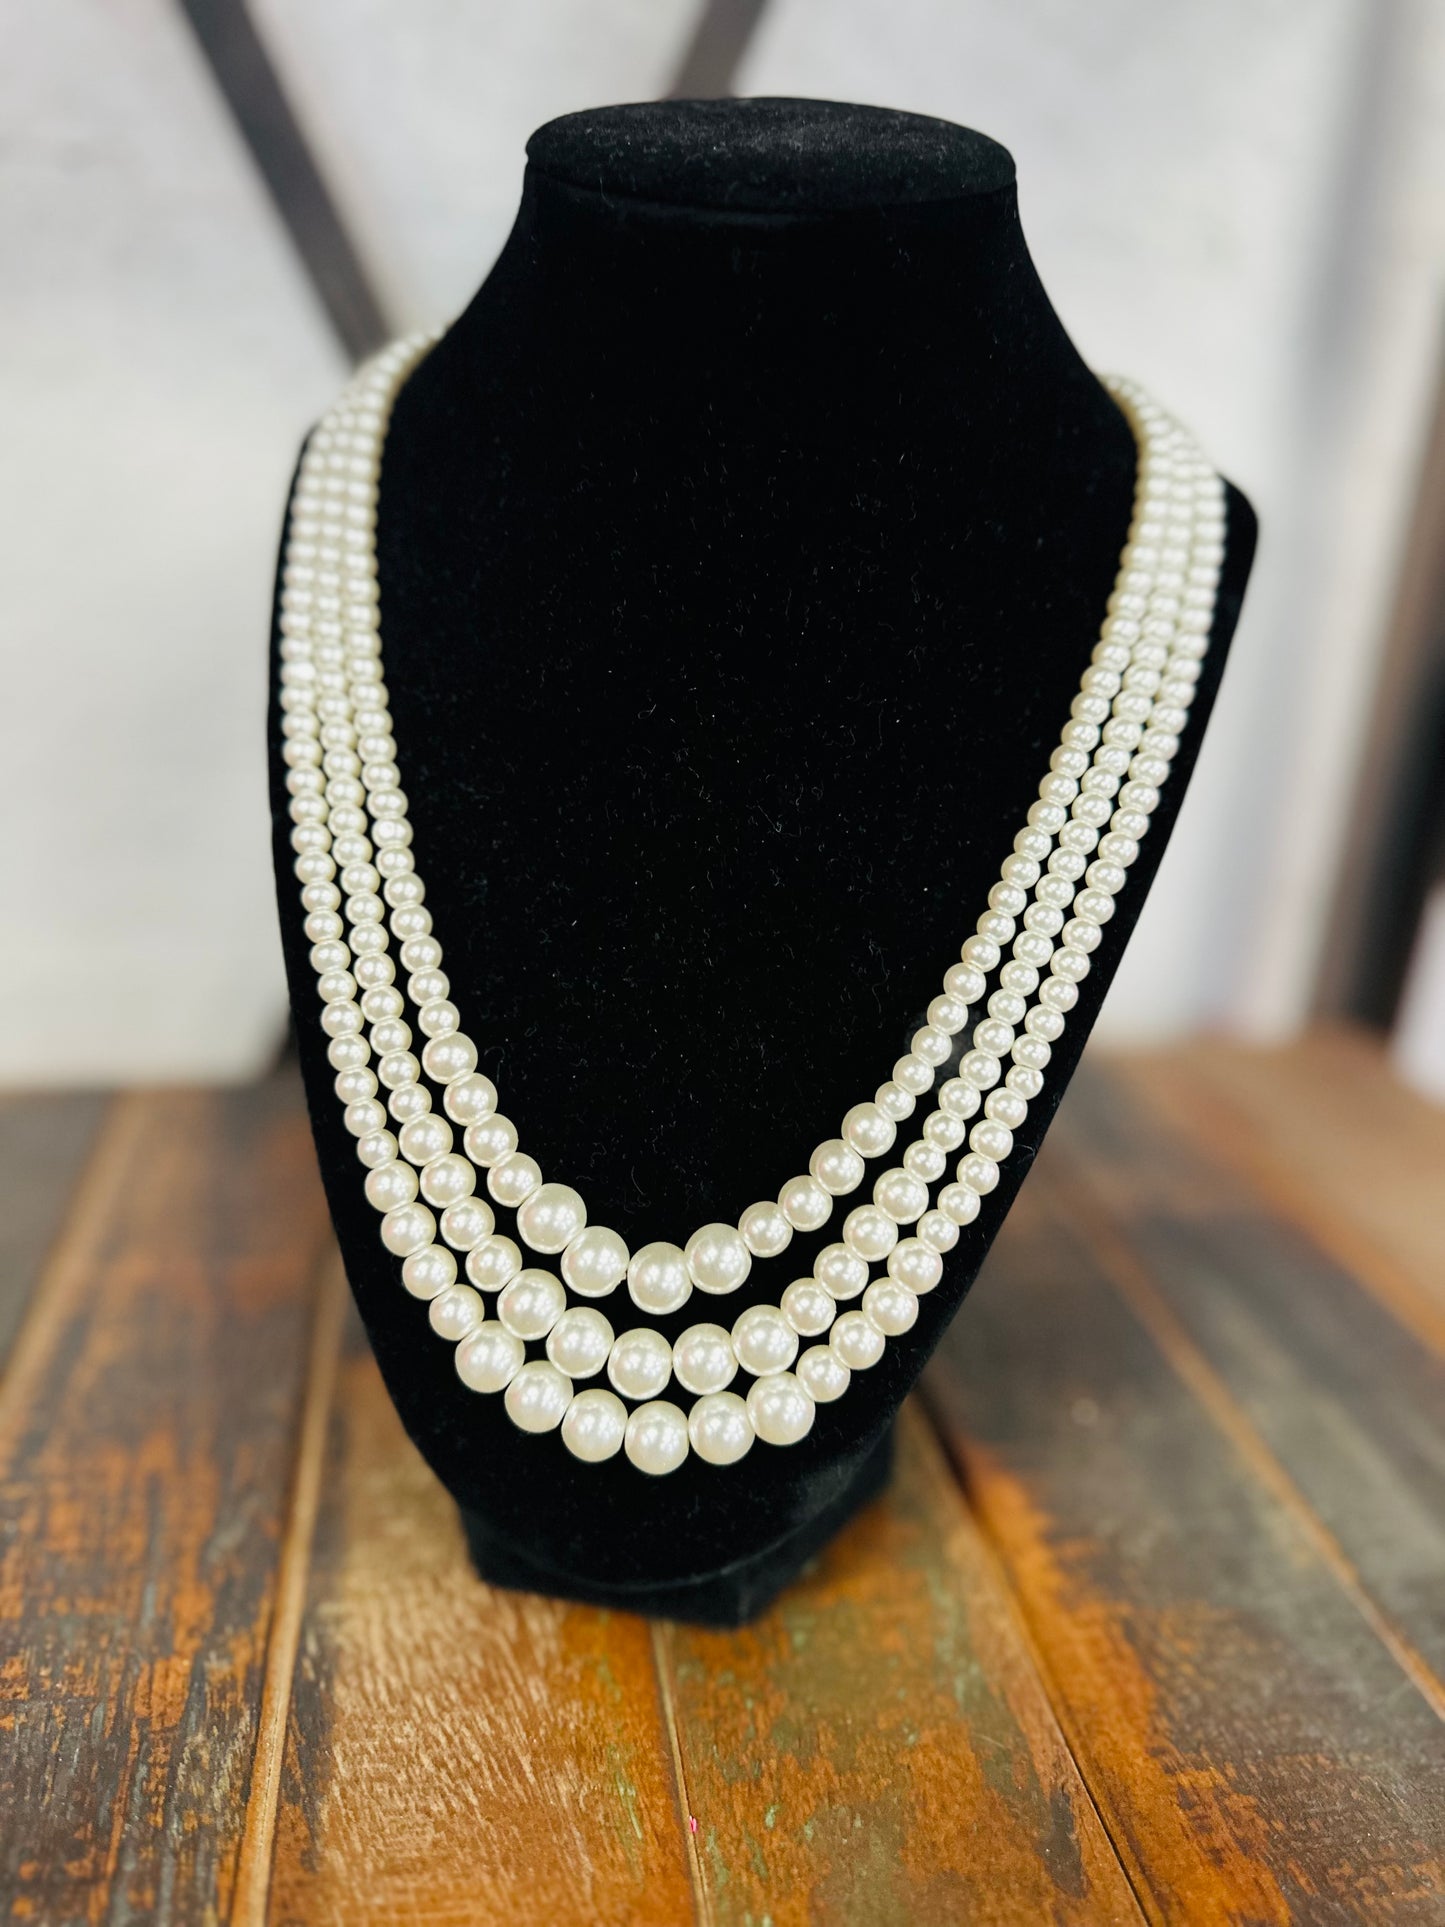 Classic Multi Strand Pearl Necklace